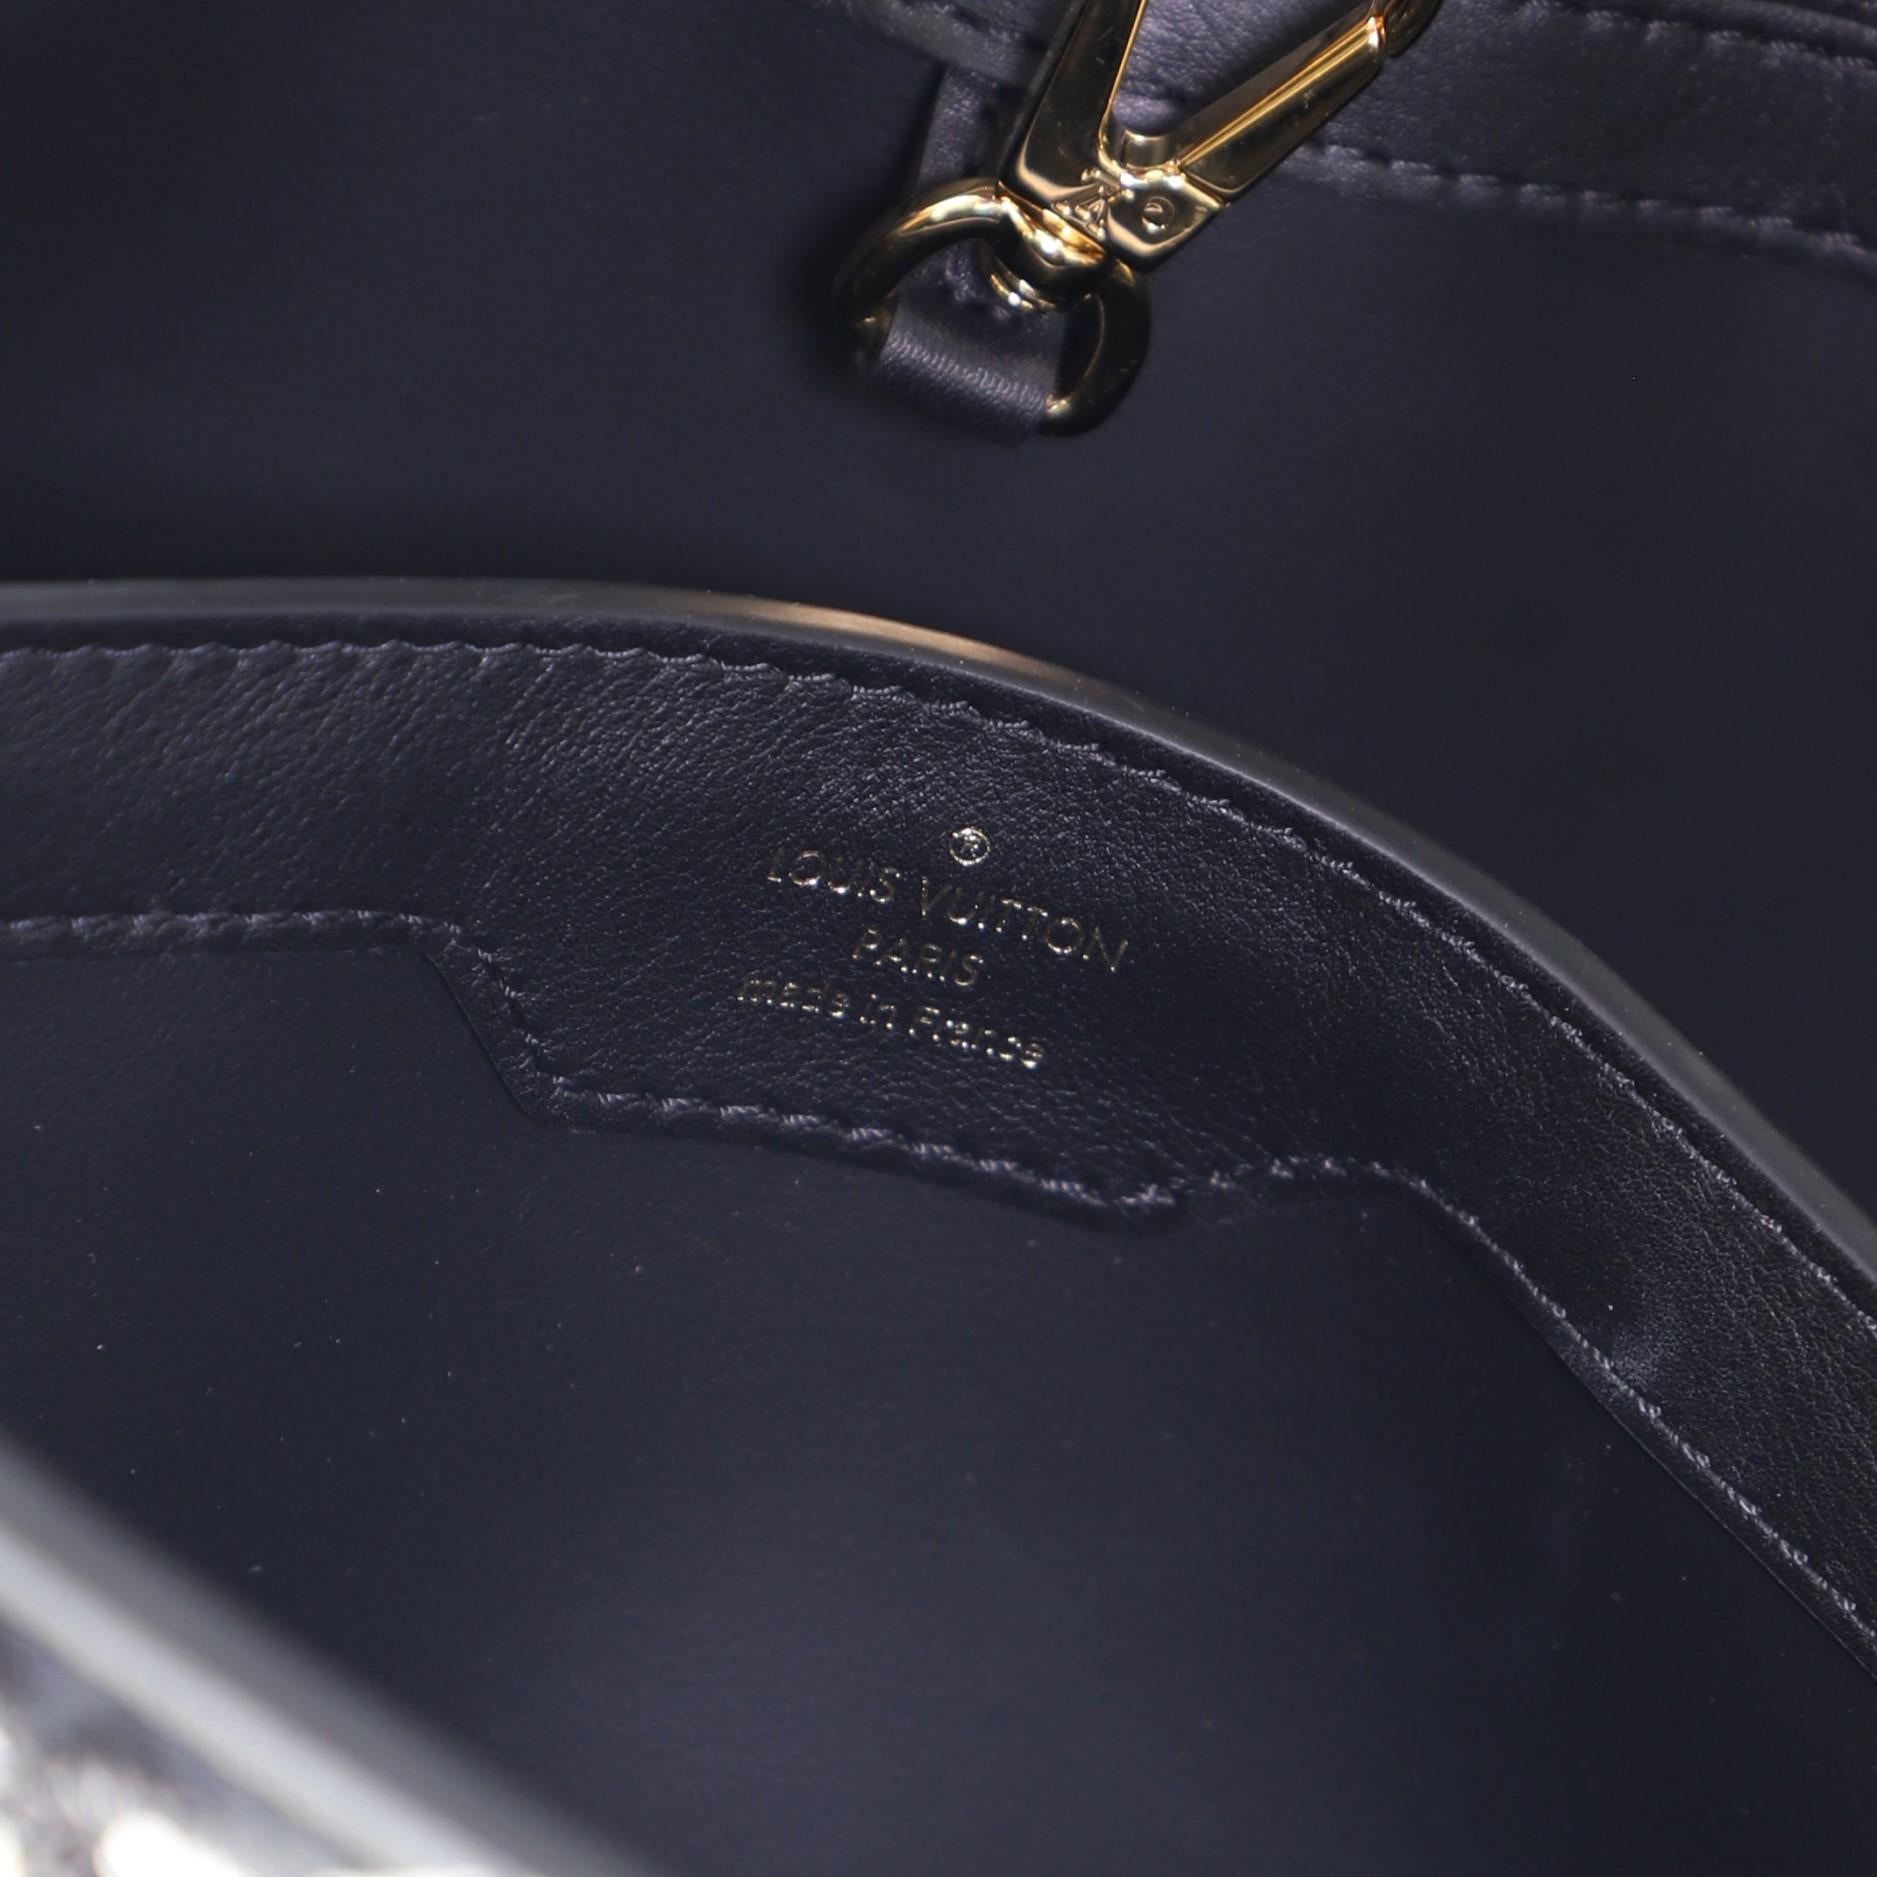 Black Louis Vuitton Capucines Bag Limited Edition Since 1854 Monogram Calfskin PM